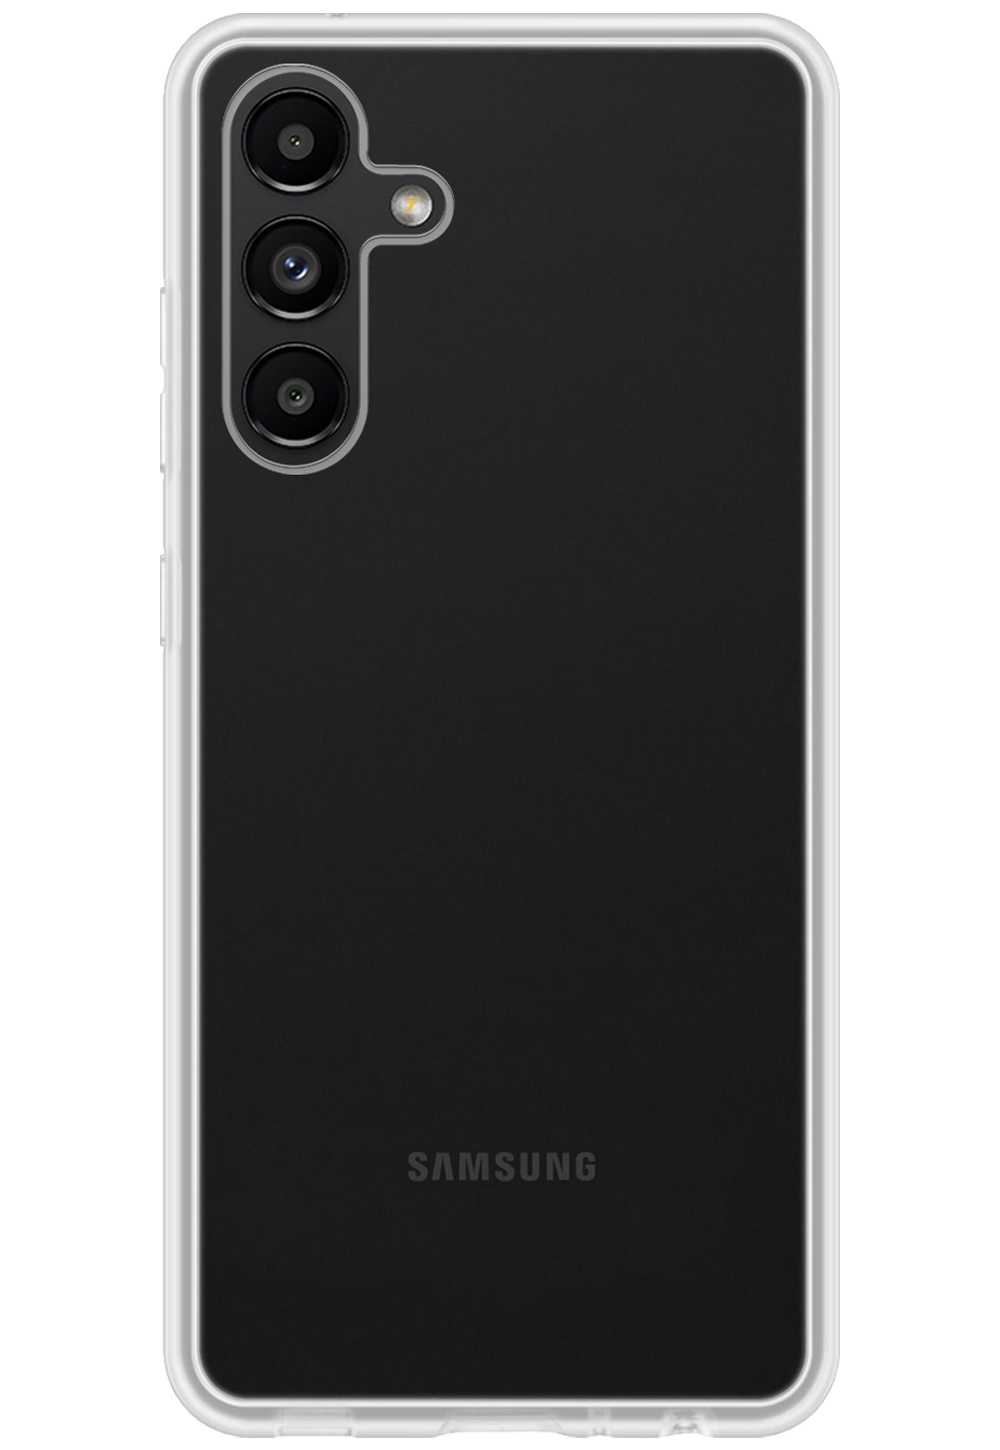 Nomfy Samsung Galaxy A13 5G Hoesje Siliconen - Samsung Galaxy Galaxy A13 5G Hoesje Transparant Case - Samsung Galaxy Galaxy A13 5G Cover Siliconen Back Cover - Transparant